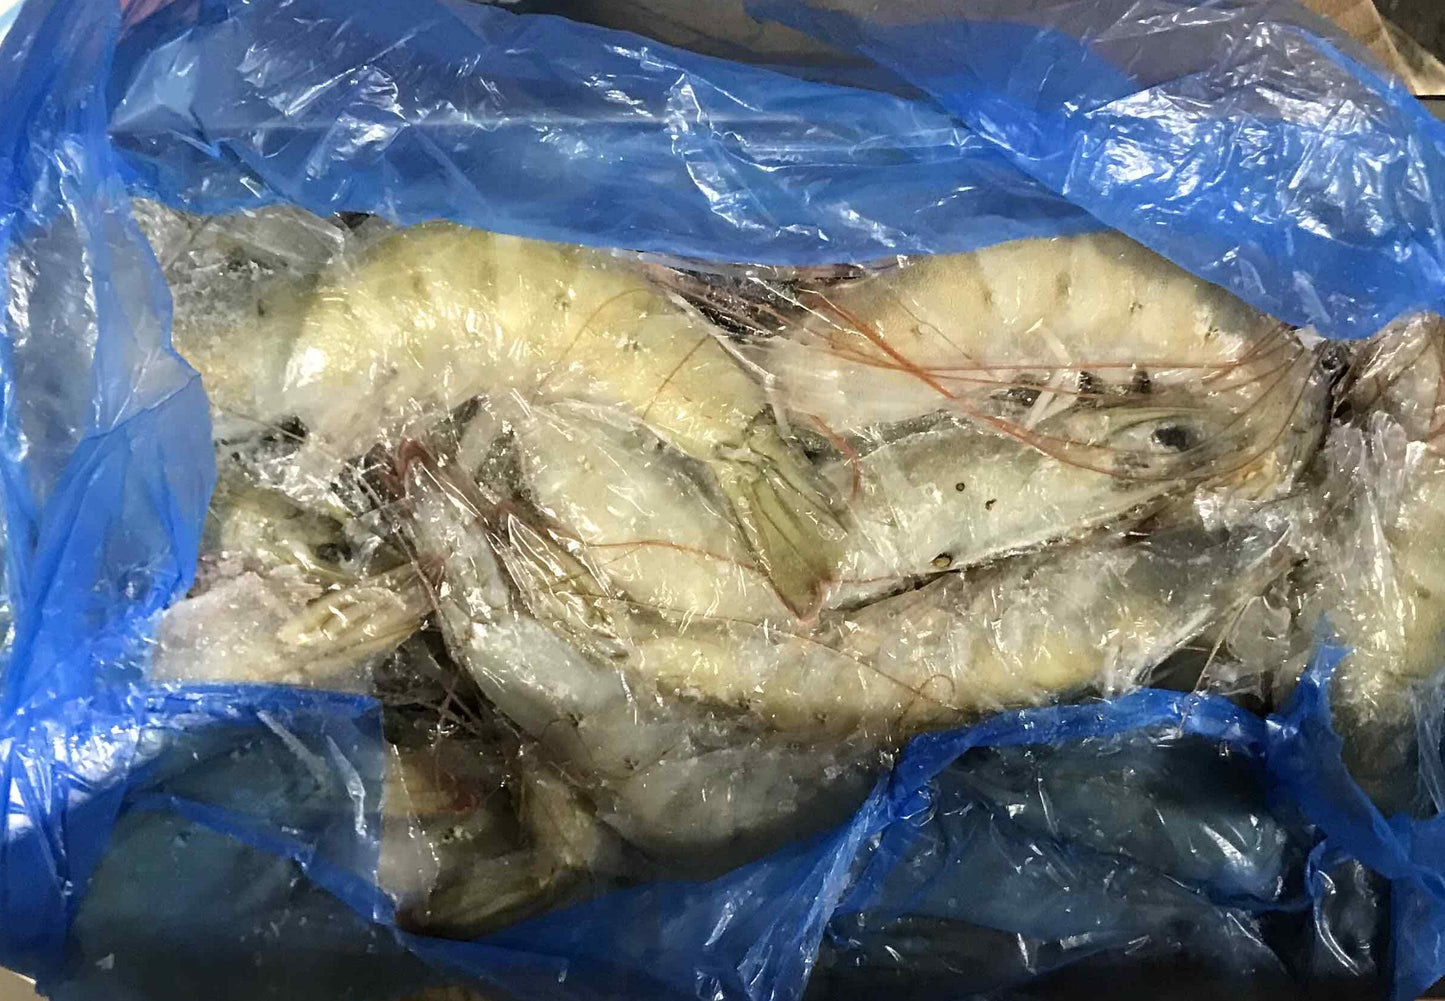 Head On Shrimp (24 lb / 40 lb)